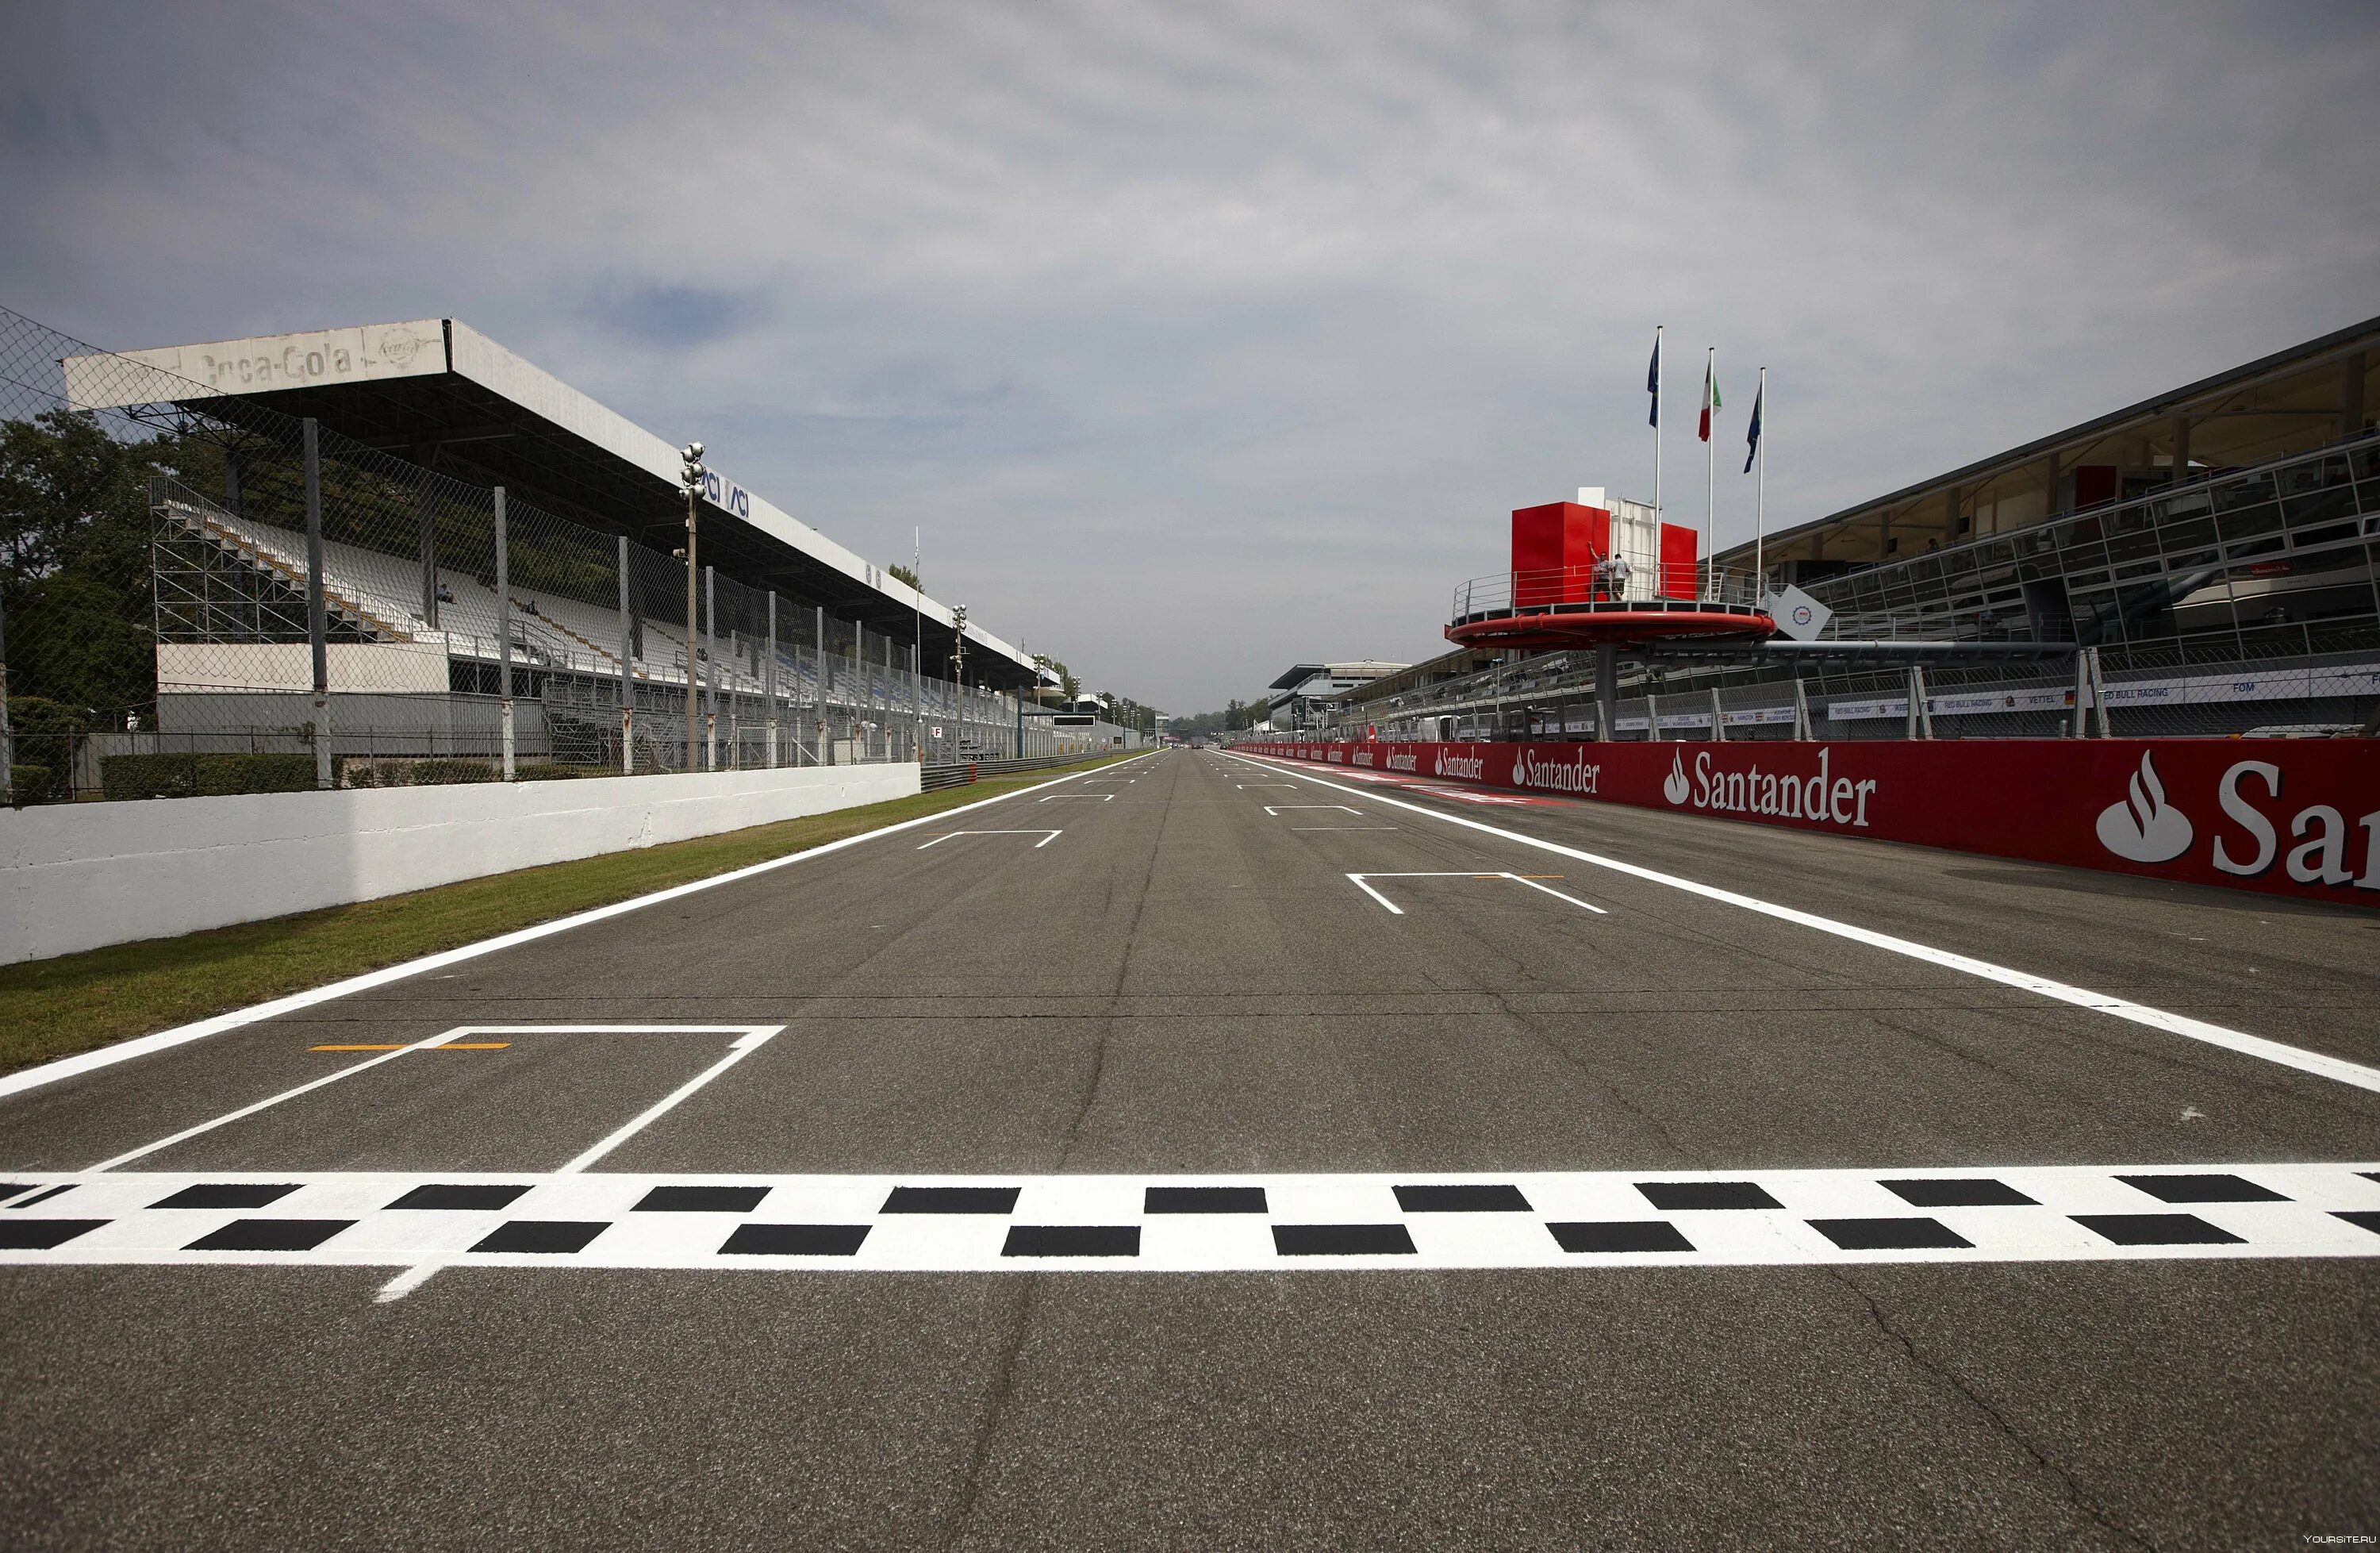 Монца трасса формулы 1. Autodromo Nazionale di Monza трасса. Италия трасса формула 1. Formula 1 Monza track.